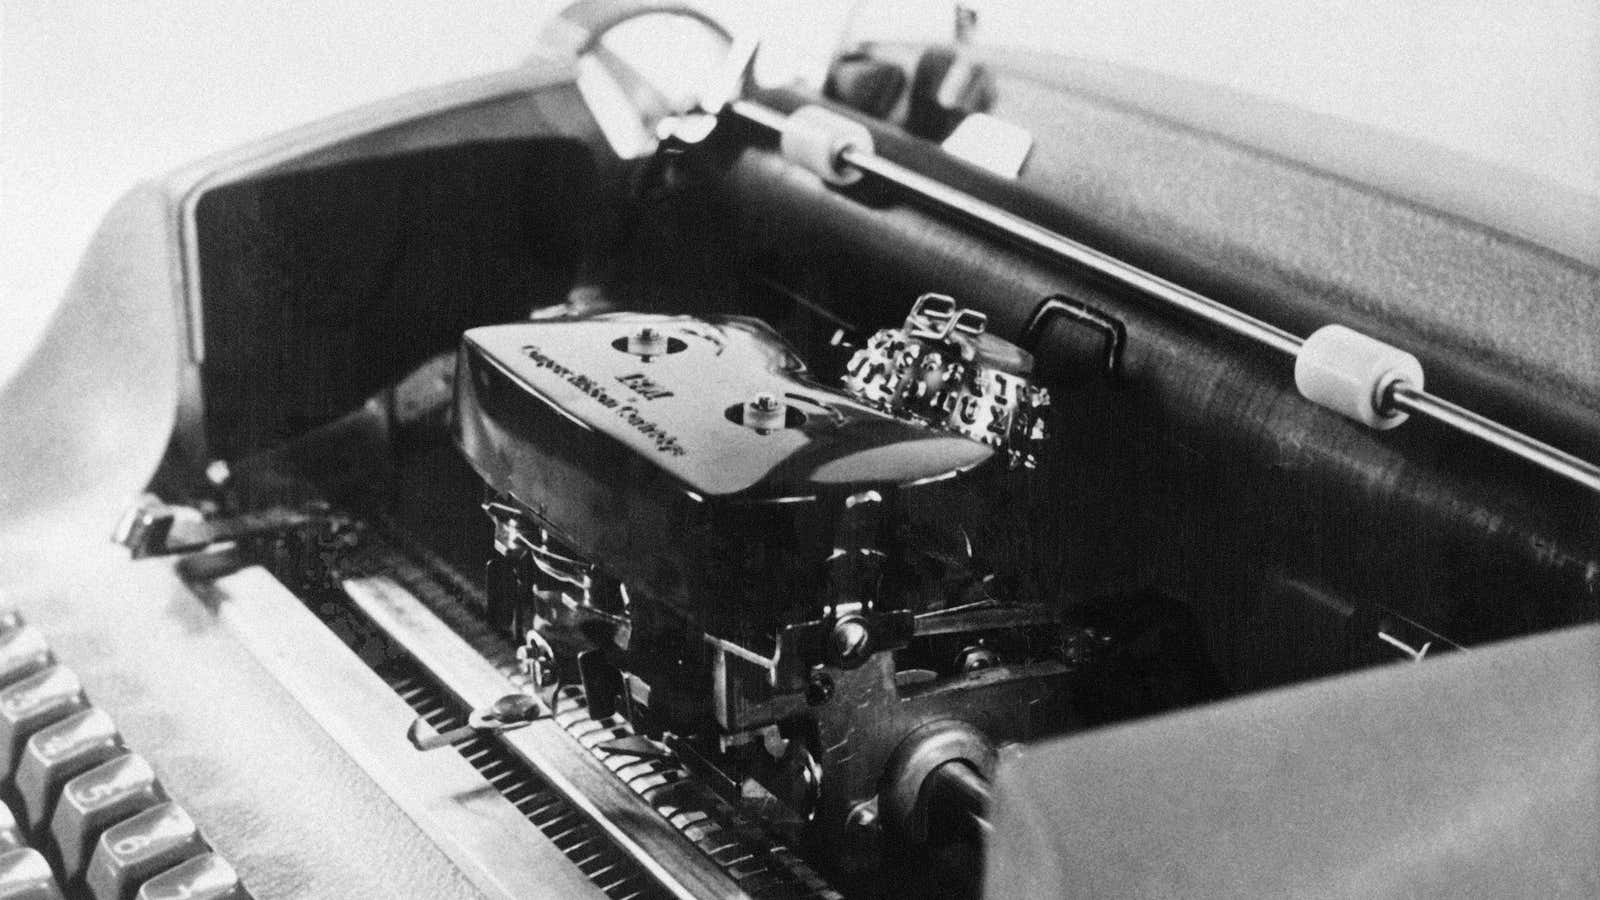 An IBM electric typewriter